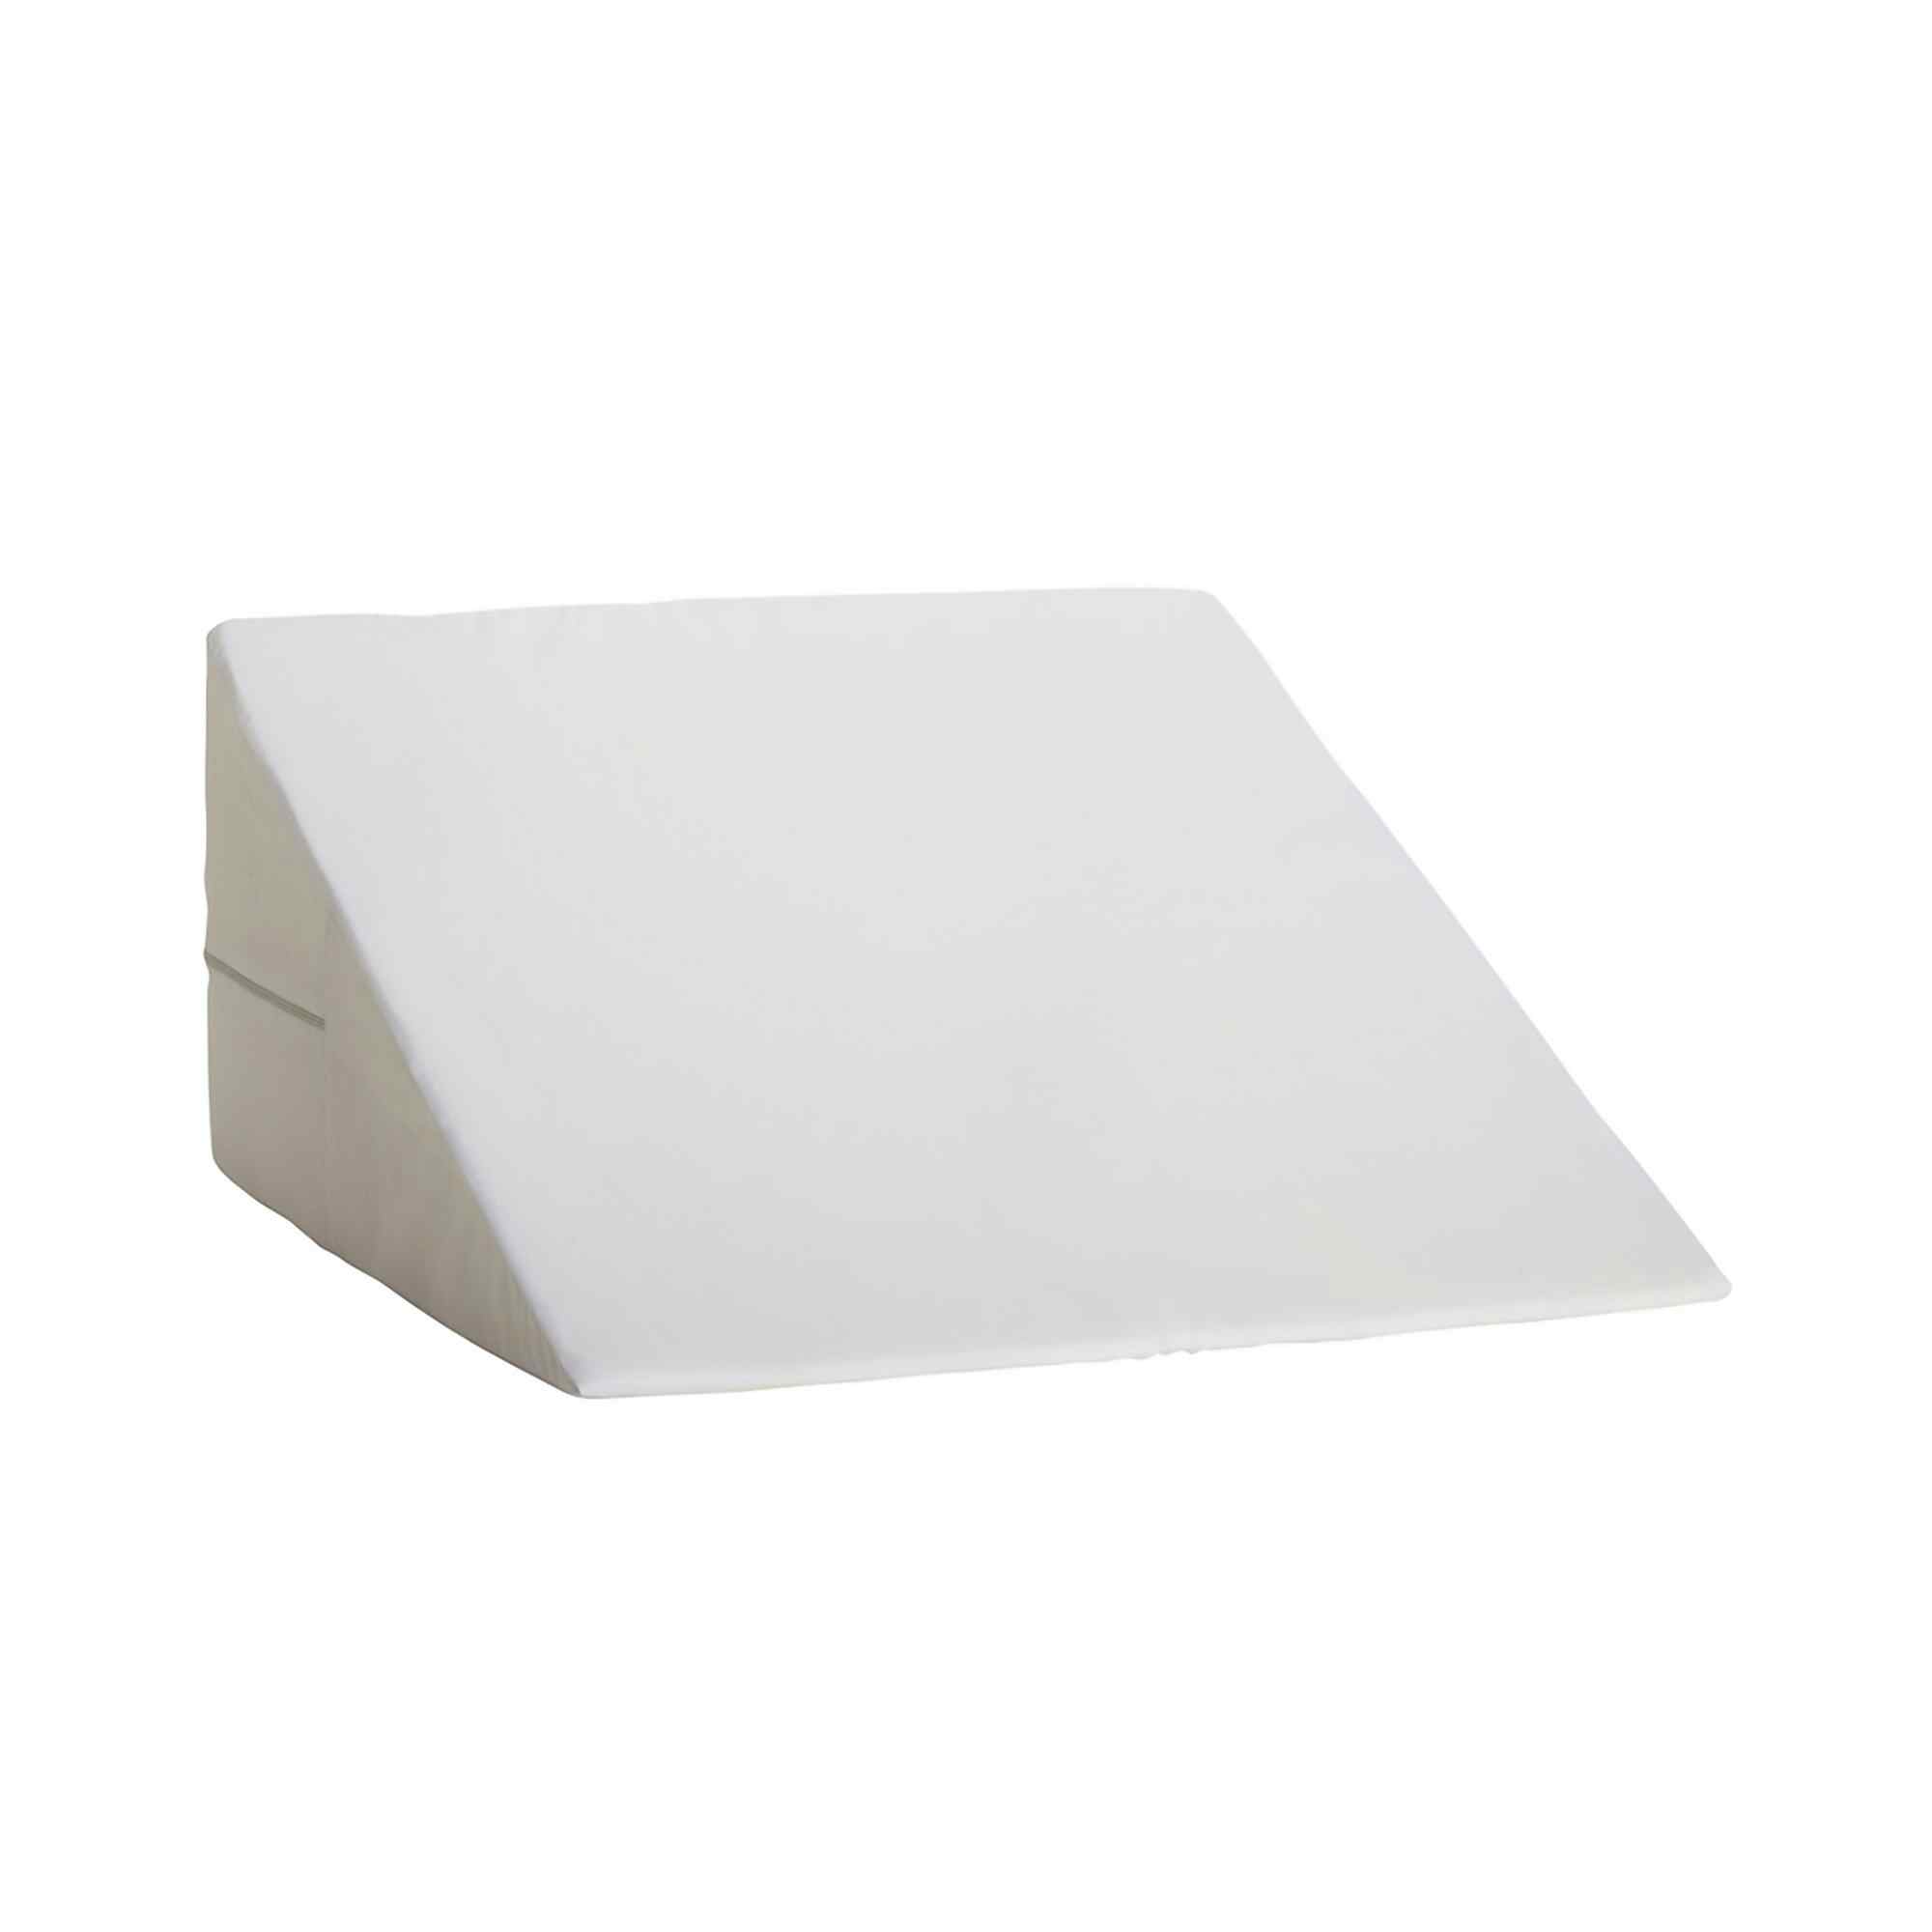 DMI Foam Freestanding Positioning Wedge, 802-8028-1900, White 24 in x 24 in x 12  in - 1 Each